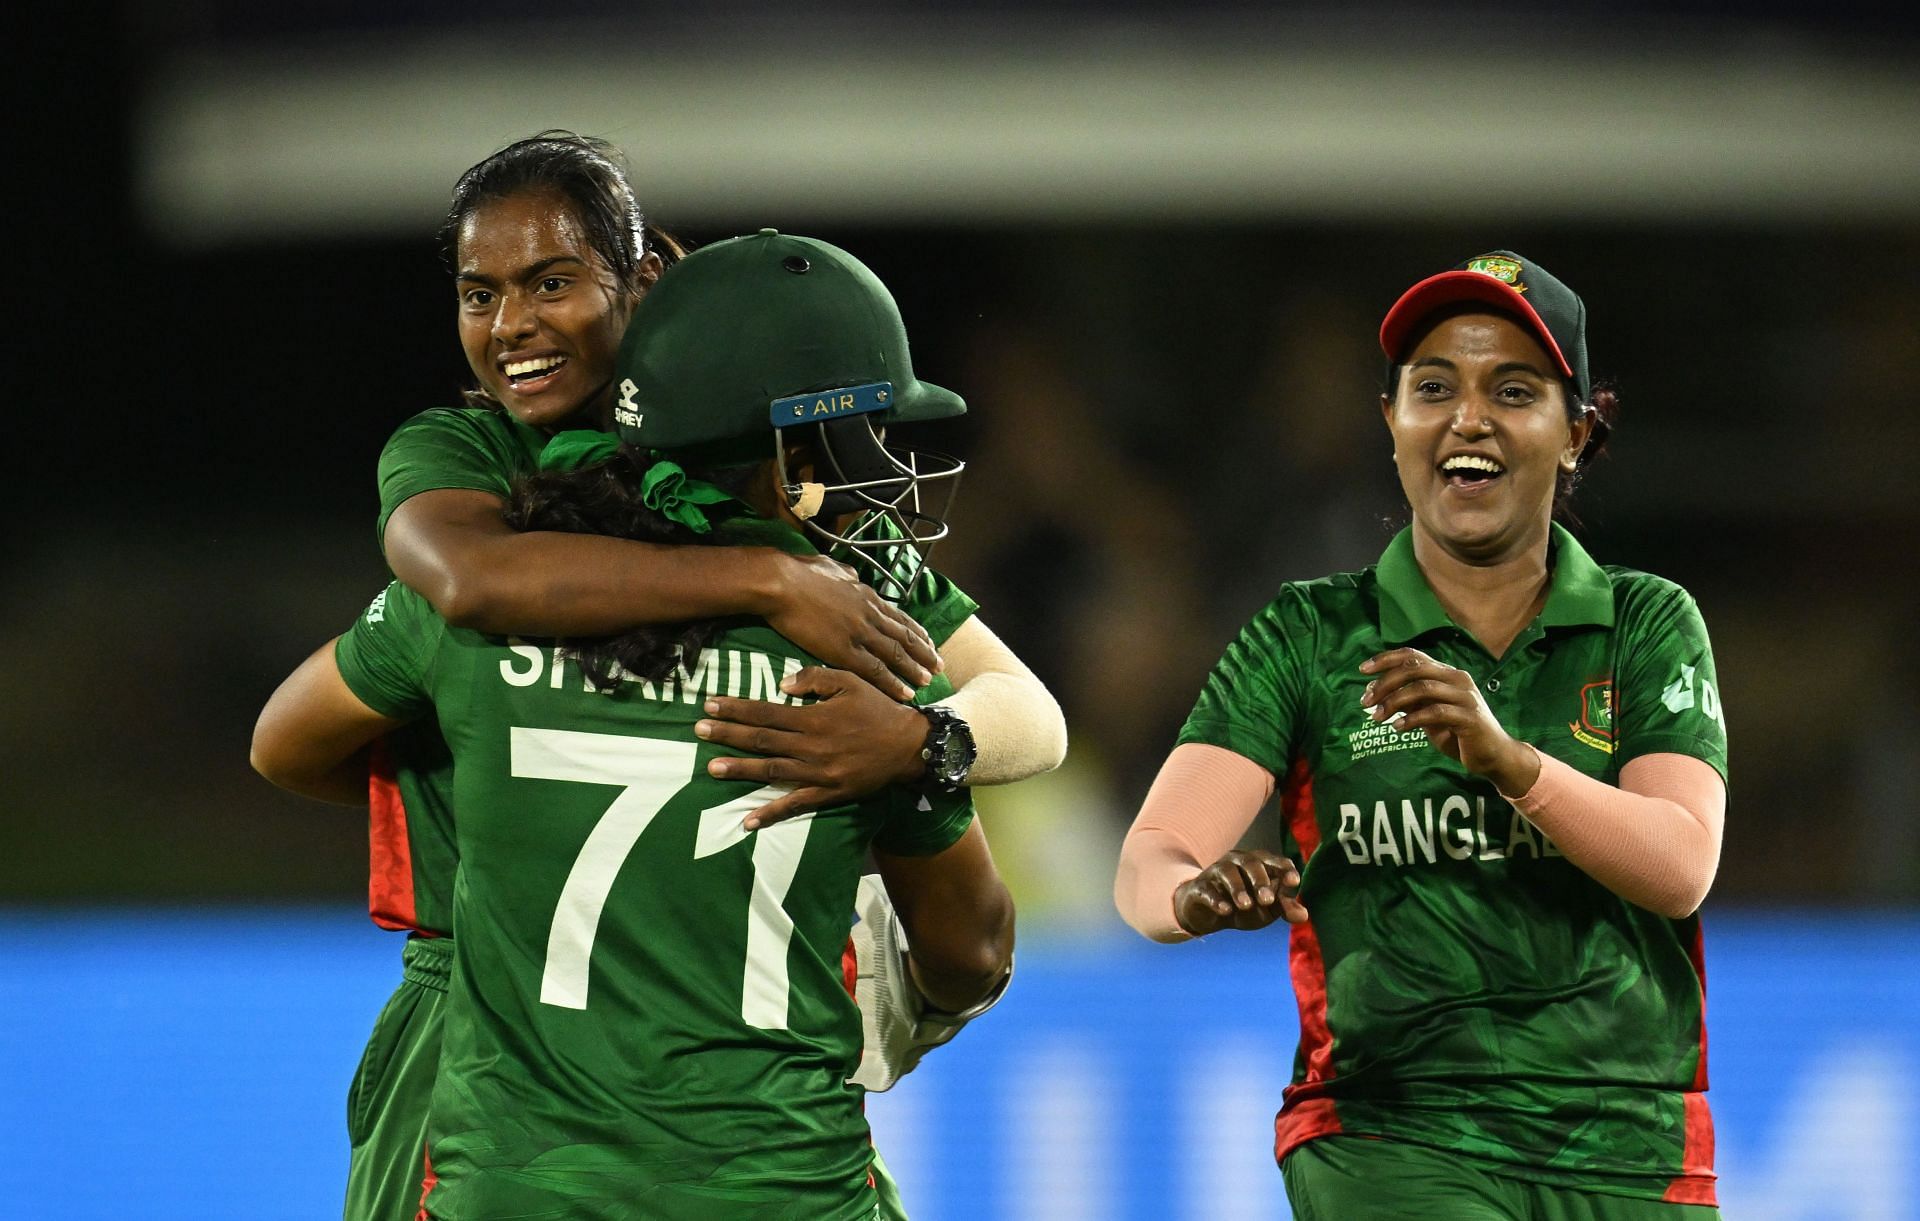 Australia v Bangladesh - ICC Women